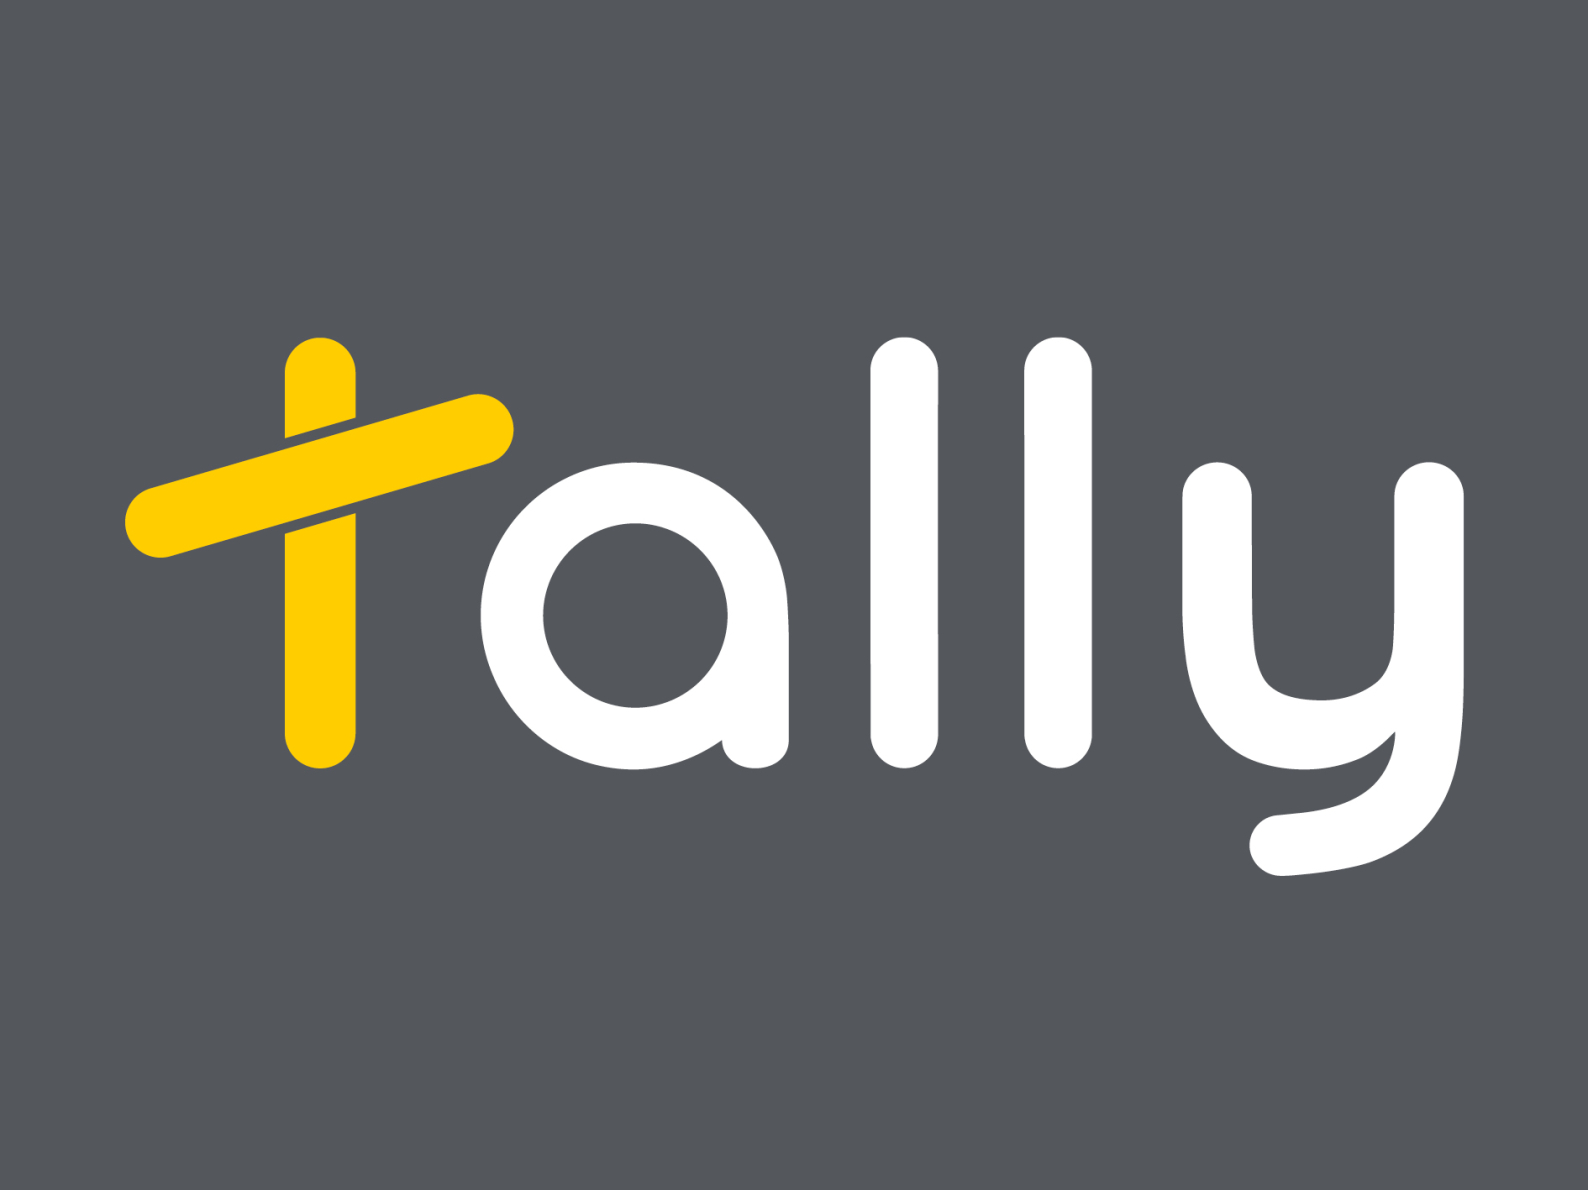 Tally logo by Tally on Dribbble